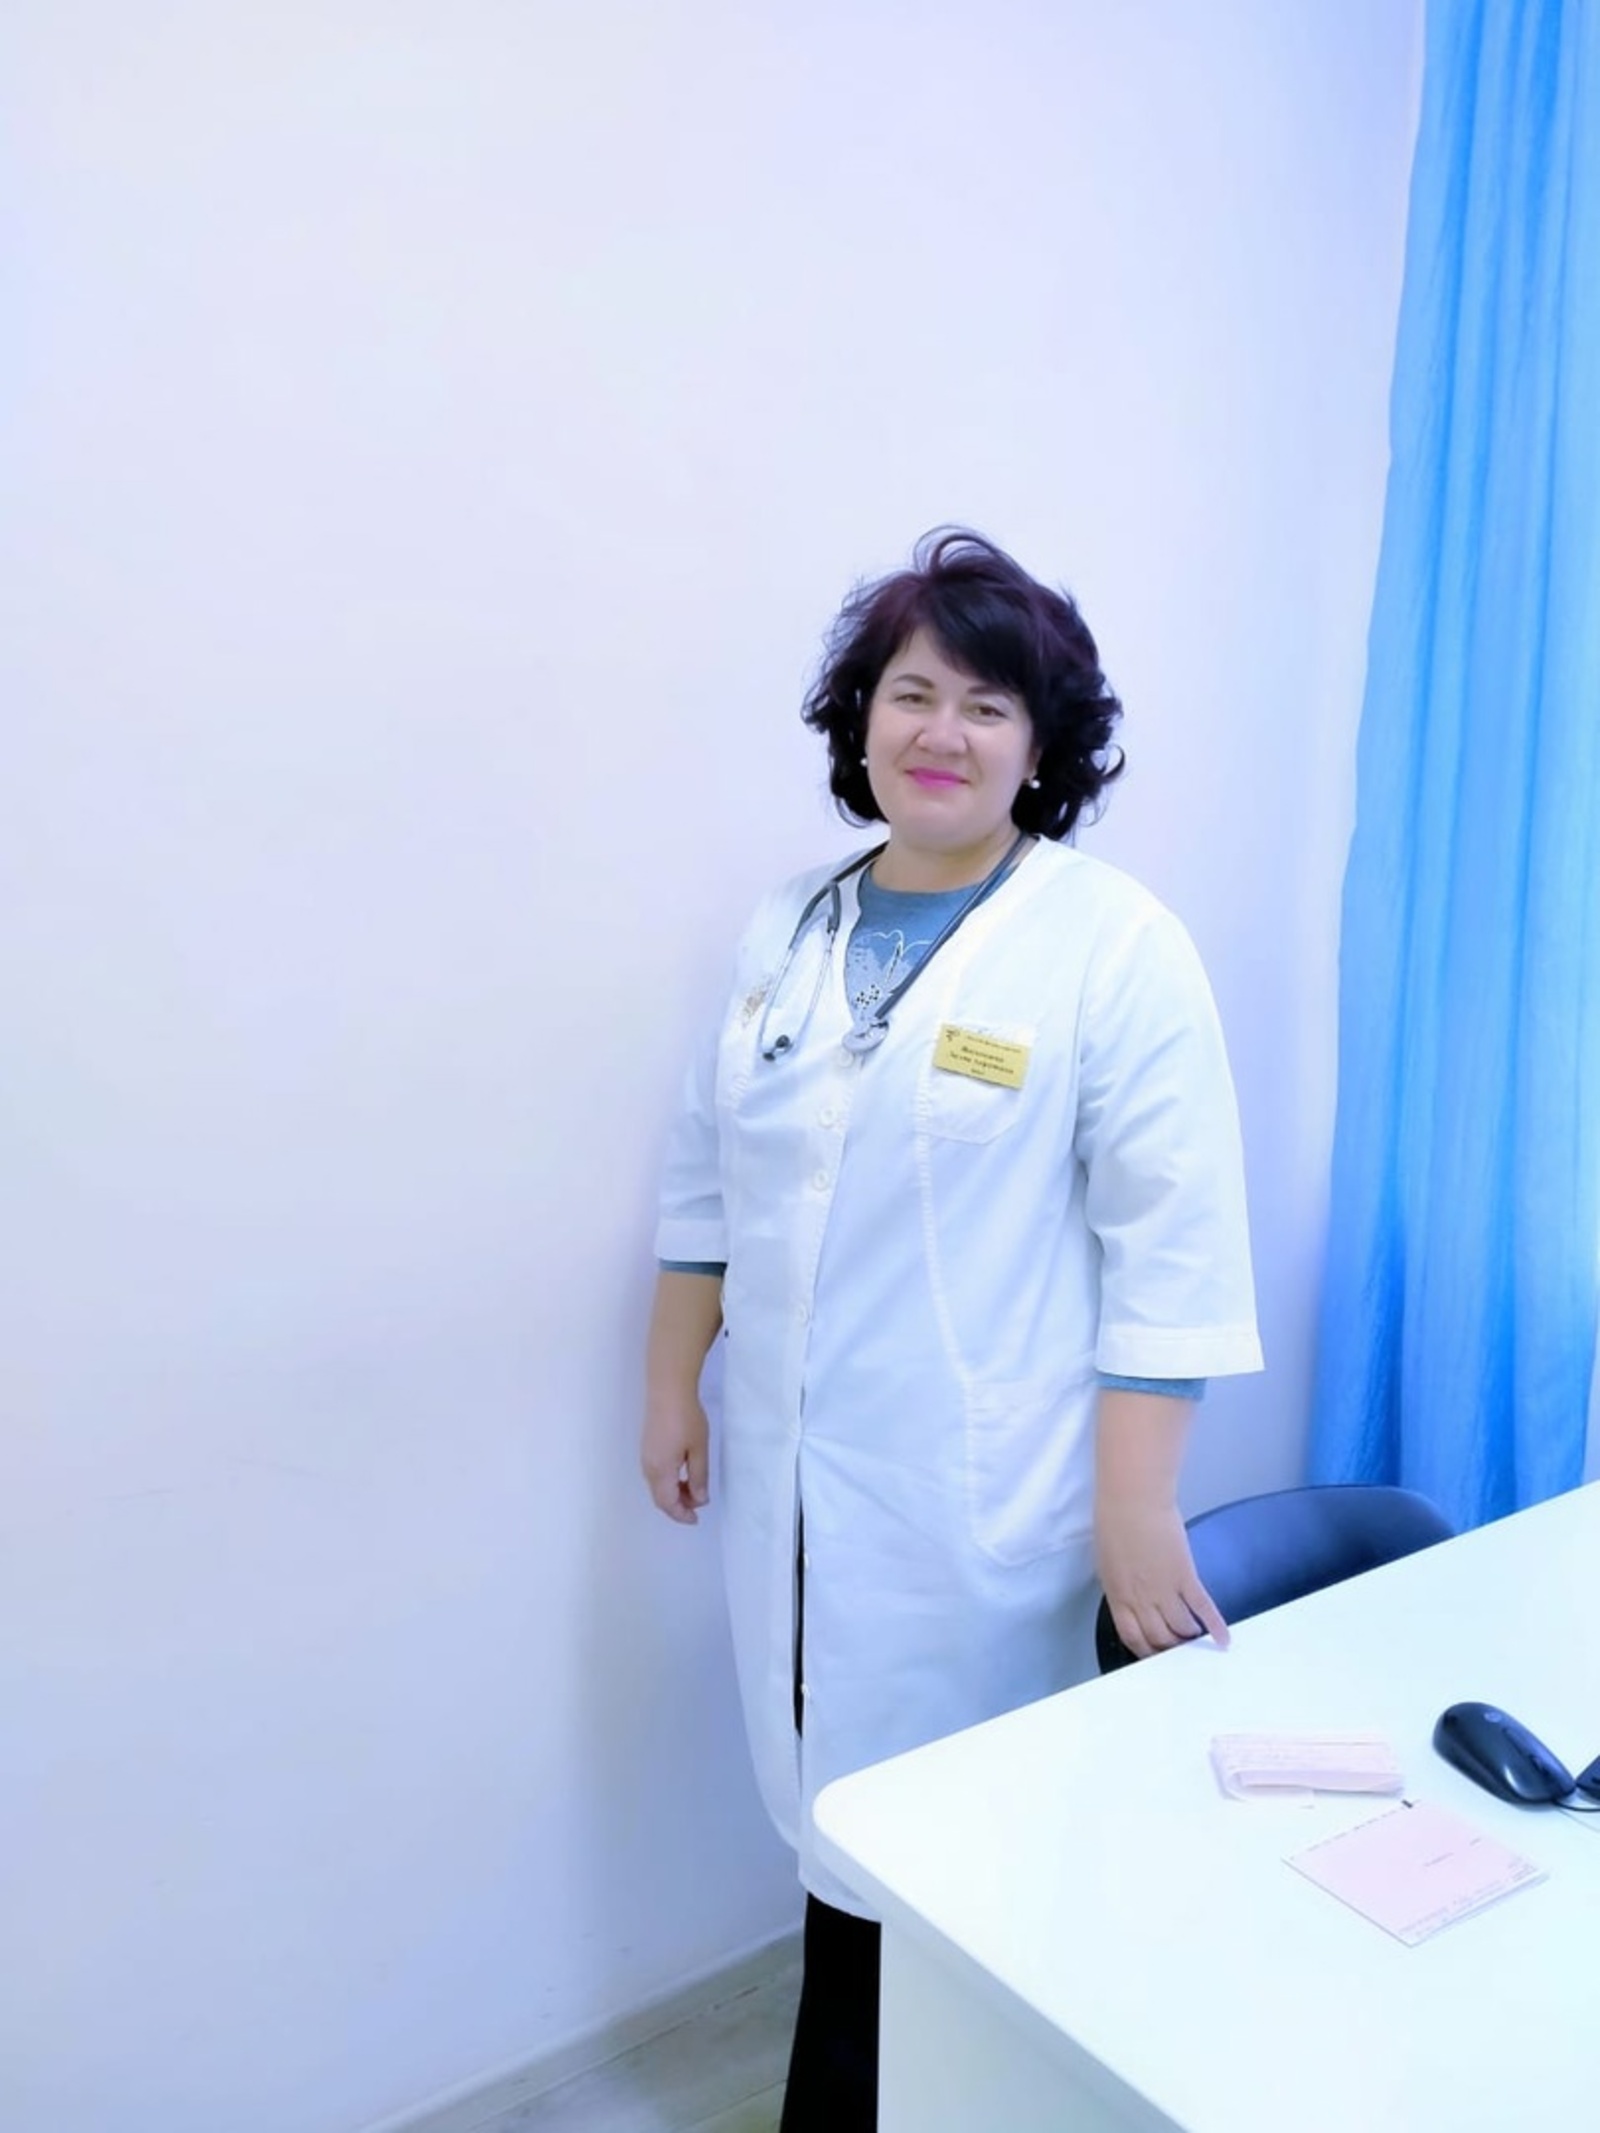 Терапевт-кардиолог Мишкинской ЦРБ Лилия Акрамовна Ишмакаева делится секретом успешной работы в медицине